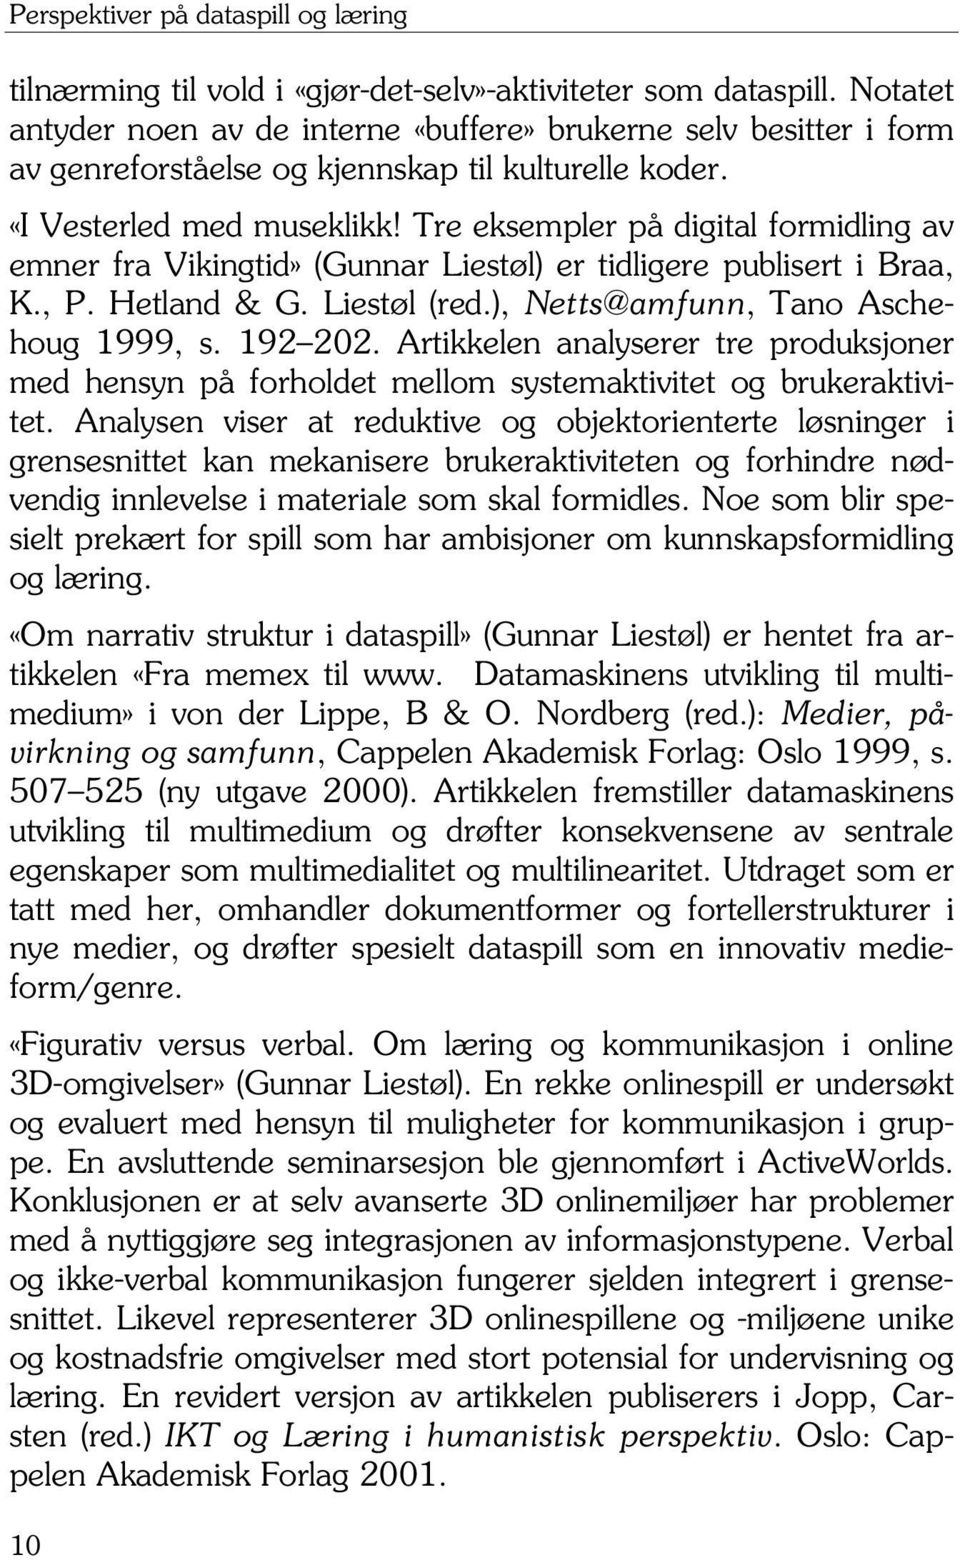 Tre eksempler på digital formidling av emner fra Vikingtid» (Gunnar Liestøl) er tidligere publisert i Braa, K., P. Hetland & G. Liestøl (red.), Netts@amfunn, Tano Aschehoug 1999, s. 192 202.